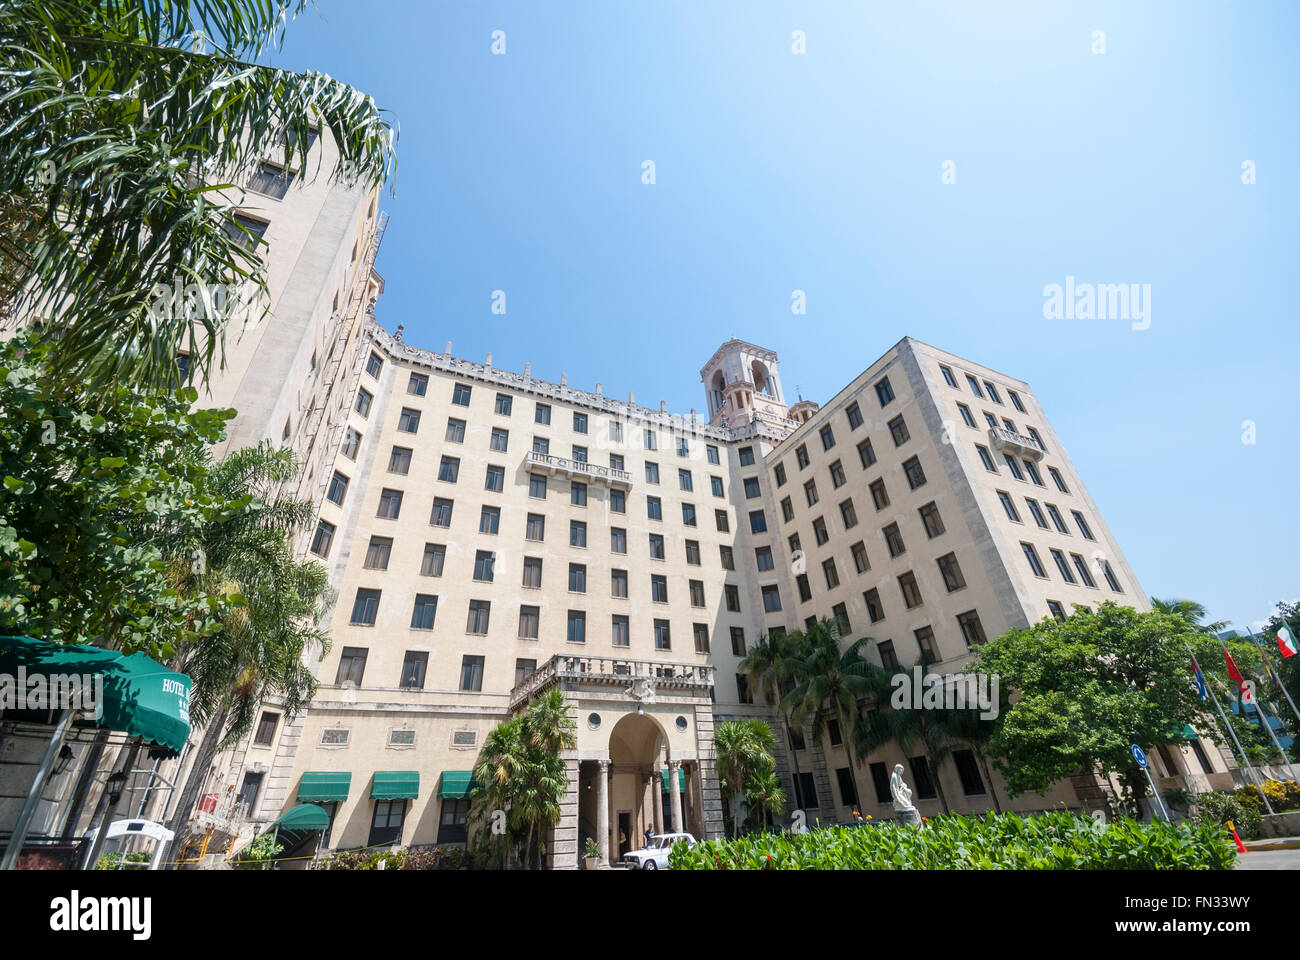 Il Nacional de Cuba Hotel in Havana Cuba. Una volta che una folla di ritrovo famoso hotel serve ora ricchi turisti e dignitari. Foto Stock